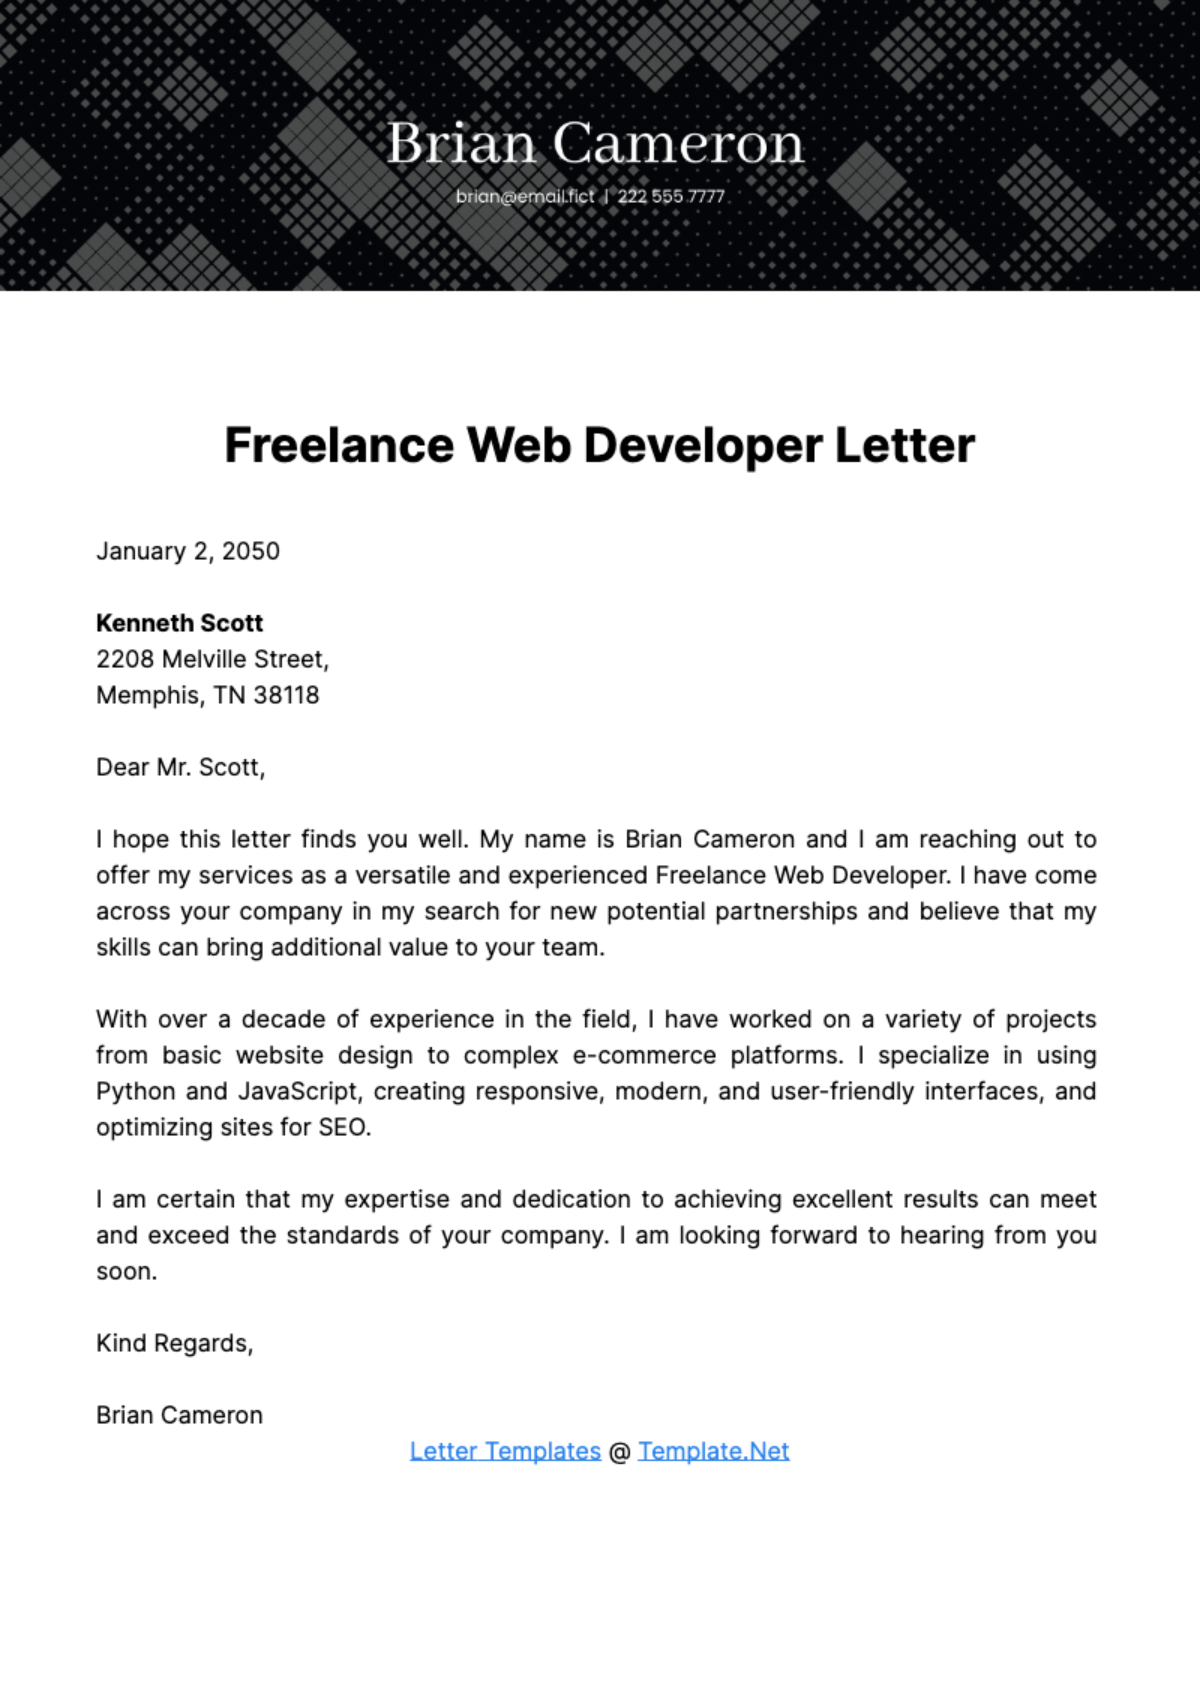 Freelance Web Developer Letter Template